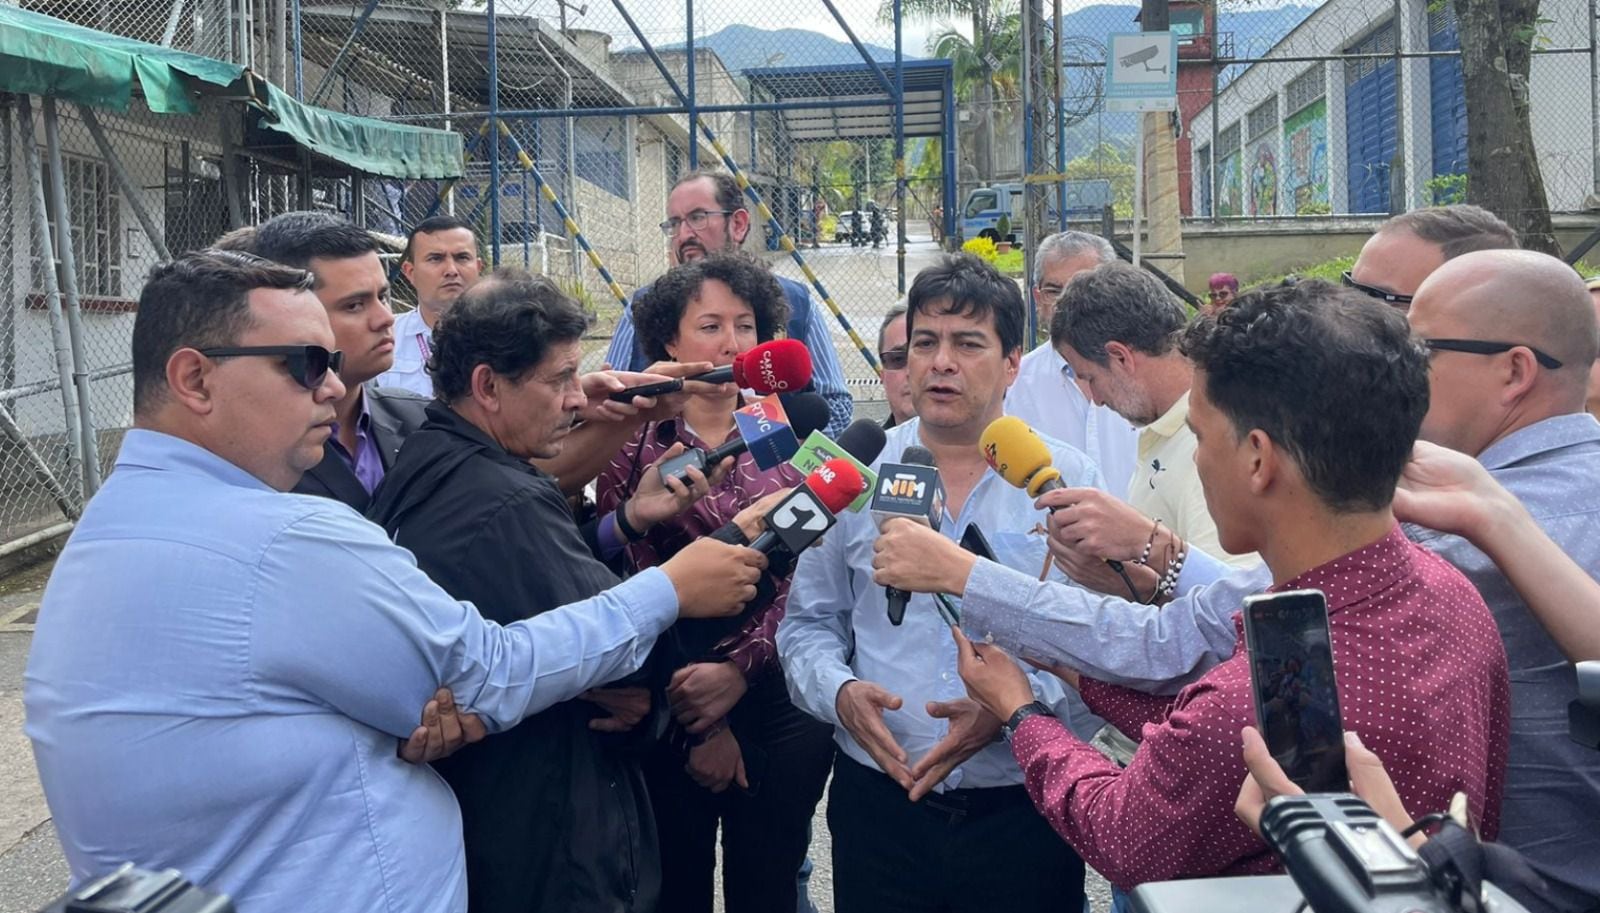 El alto comisionado Danilo Rueda anunció que, tras evaluar la voluntad expresada por voceros de las estructuras armadas ilegales de Medellín de sumarse a la política de Paz Total, se instalará una mesa de diálogo en la cárcel La Paz de Itagüí. @ComisionadoPaz/Twitter.